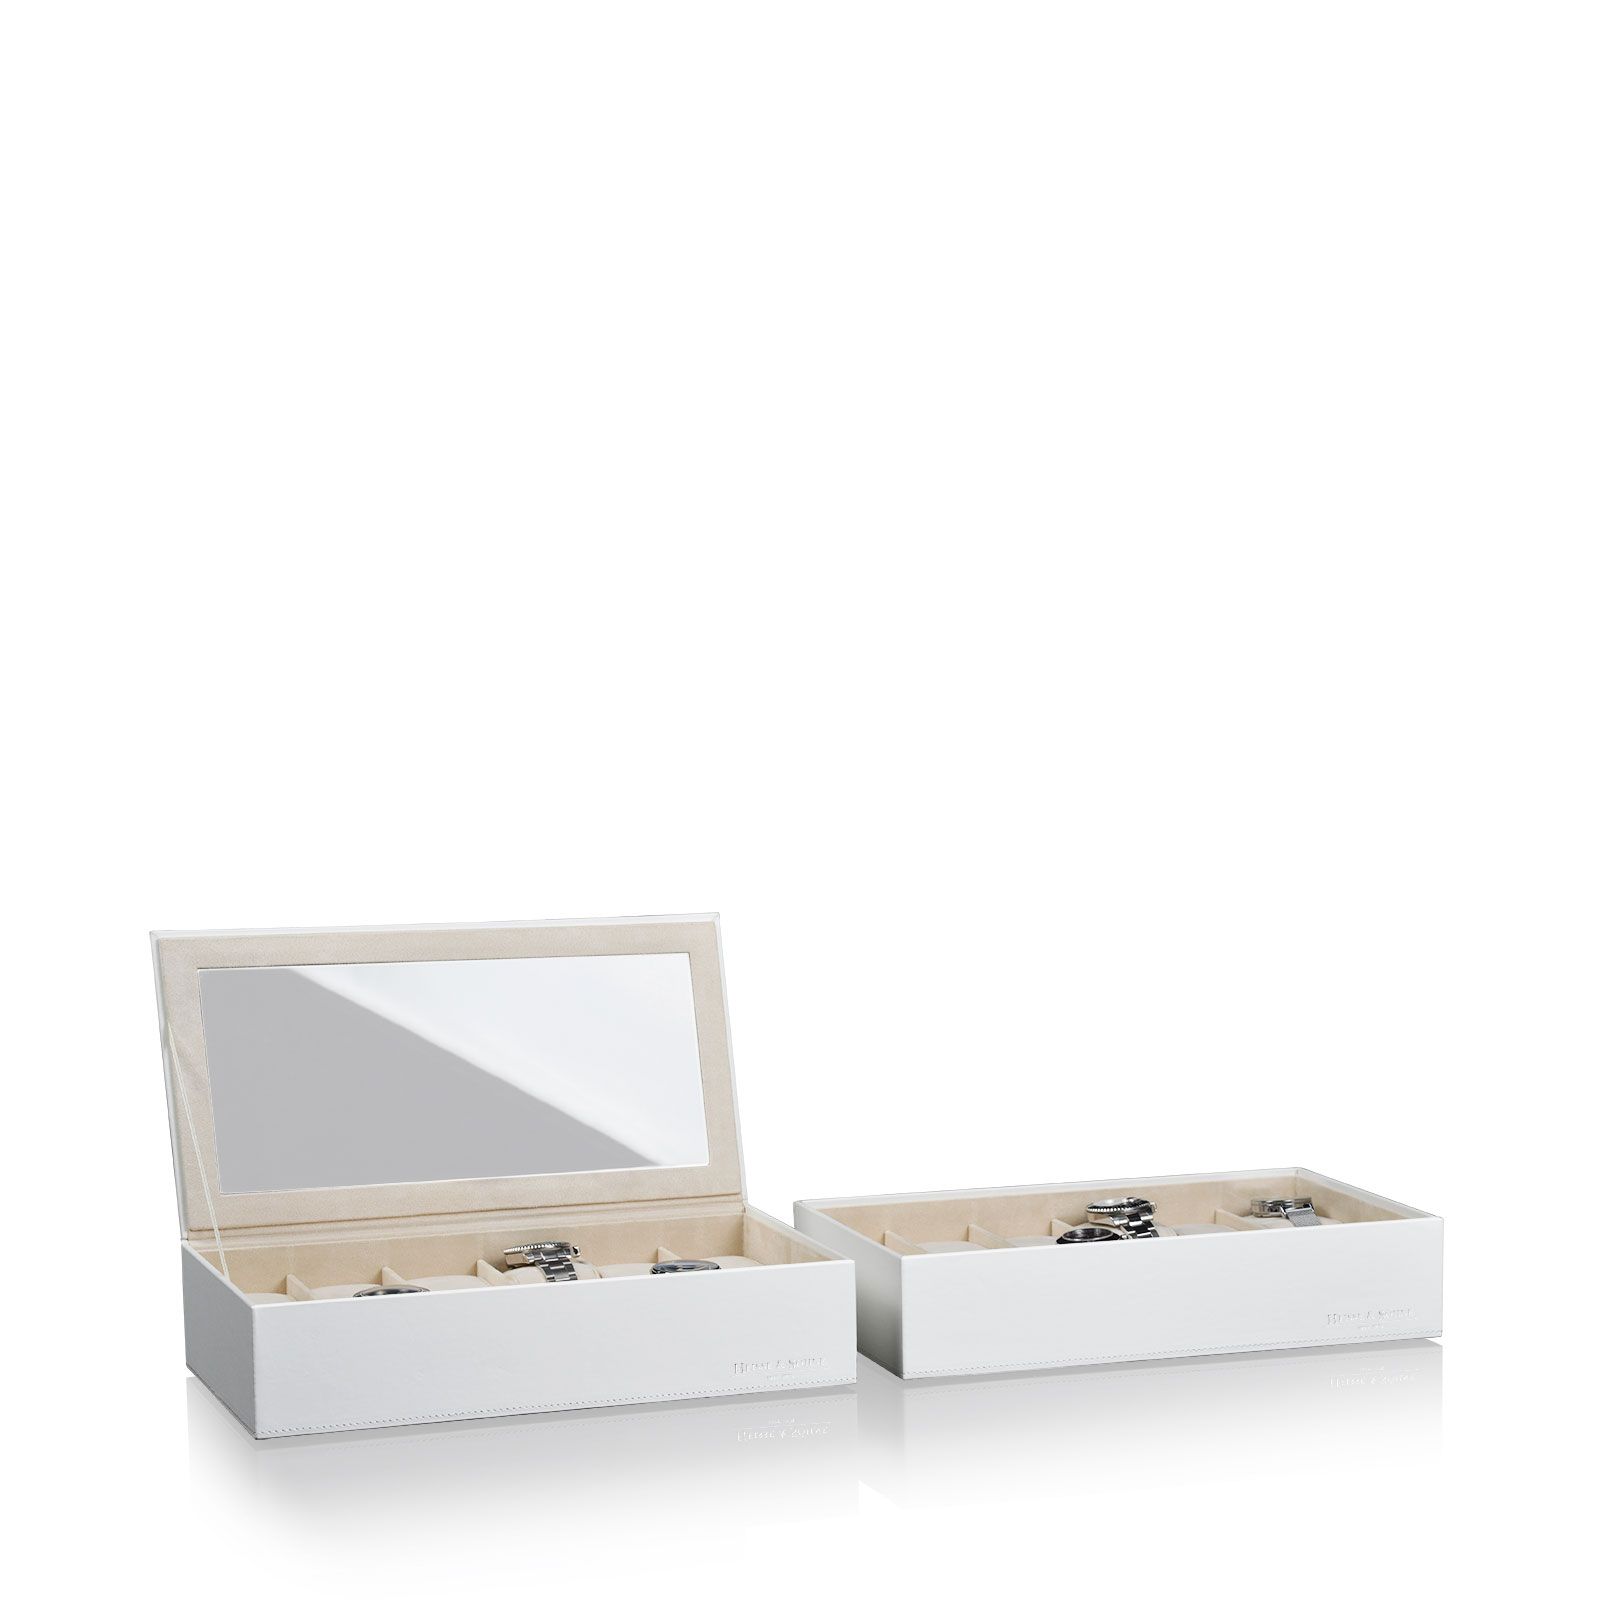 Heisse & Söhne Stapelbares Schmuckkästchen Mirage XL - Unterteil: Uhrenbox für 12 Uhren - Dunkelblau